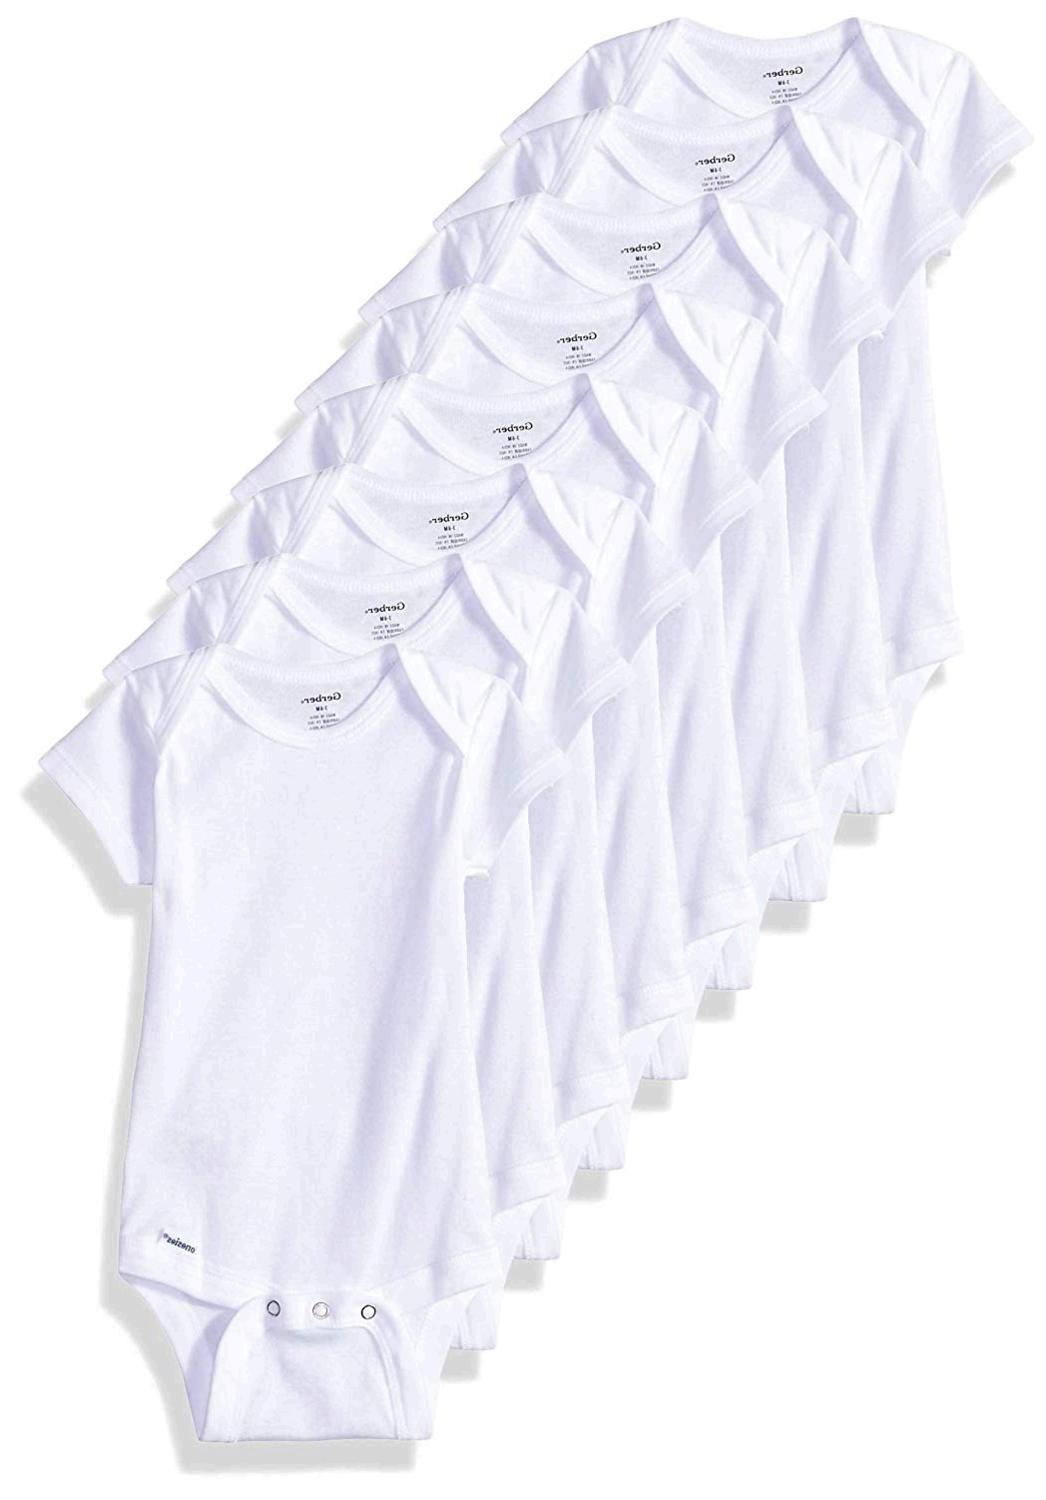 Gerber Baby 8-Pack Short-Sleeve Onesies Bodysuit, White, 24, White ...